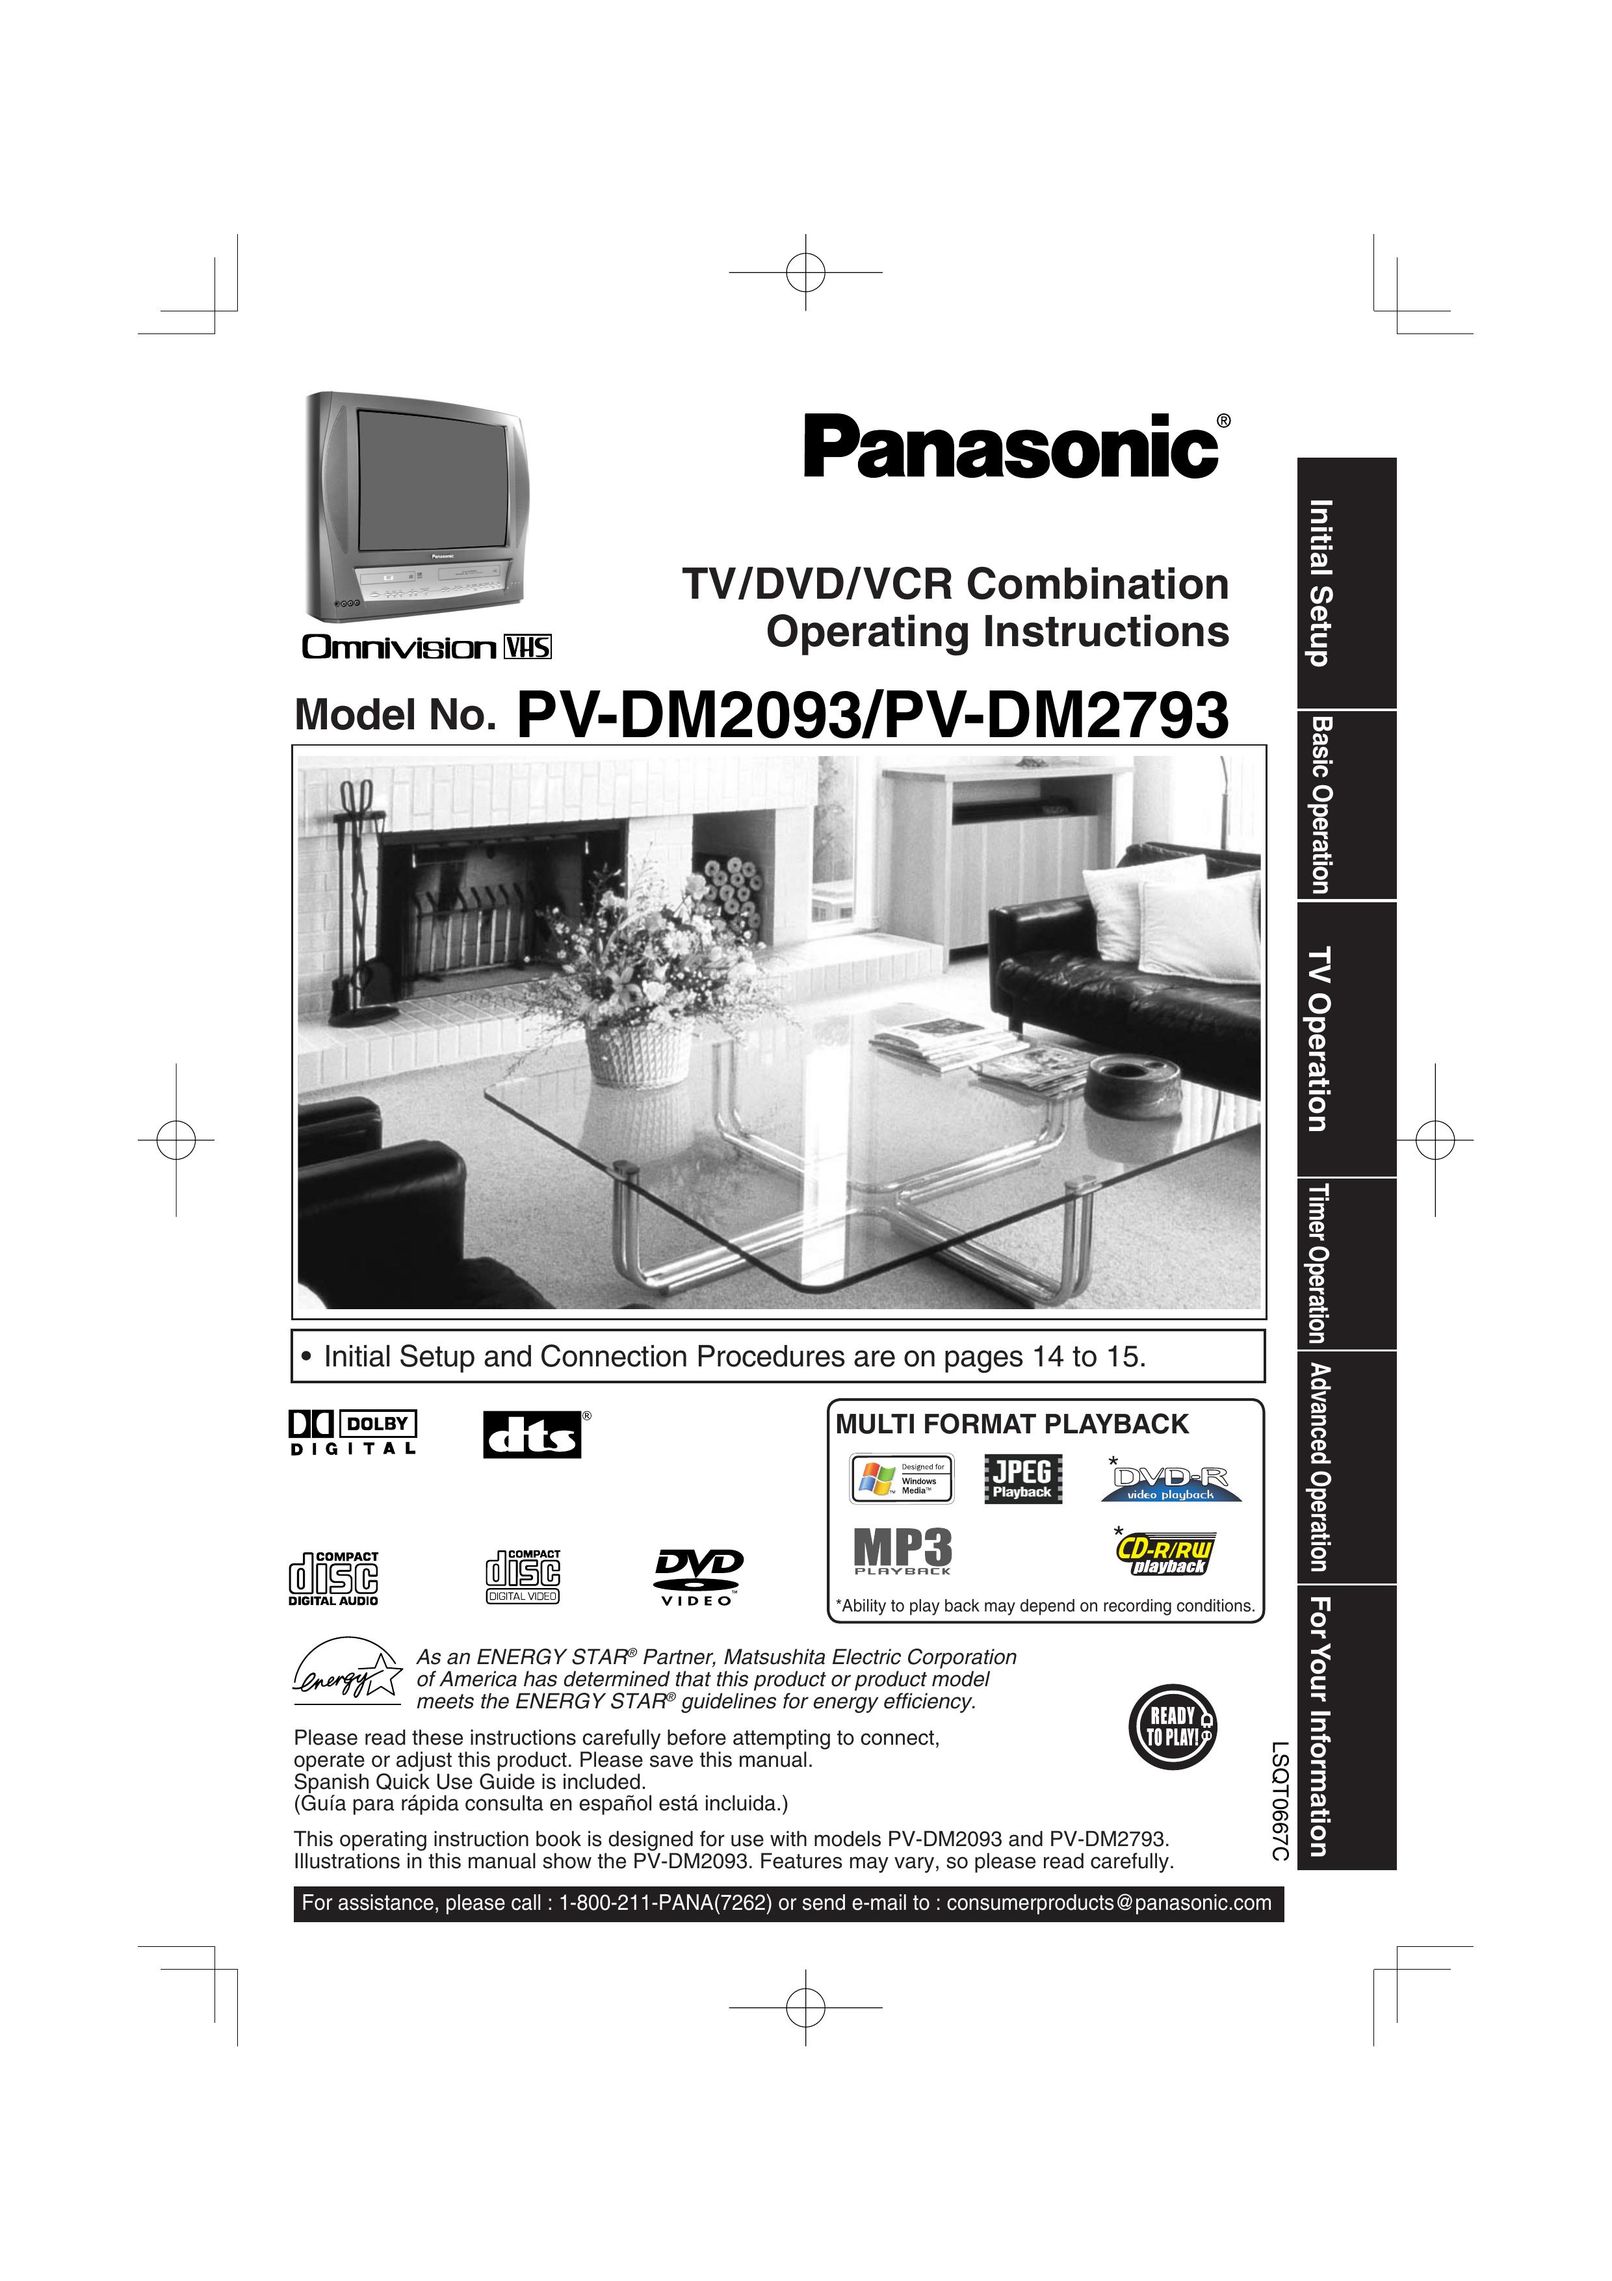 Panasonic PV DM2793 DVD VCR Combo User Manual